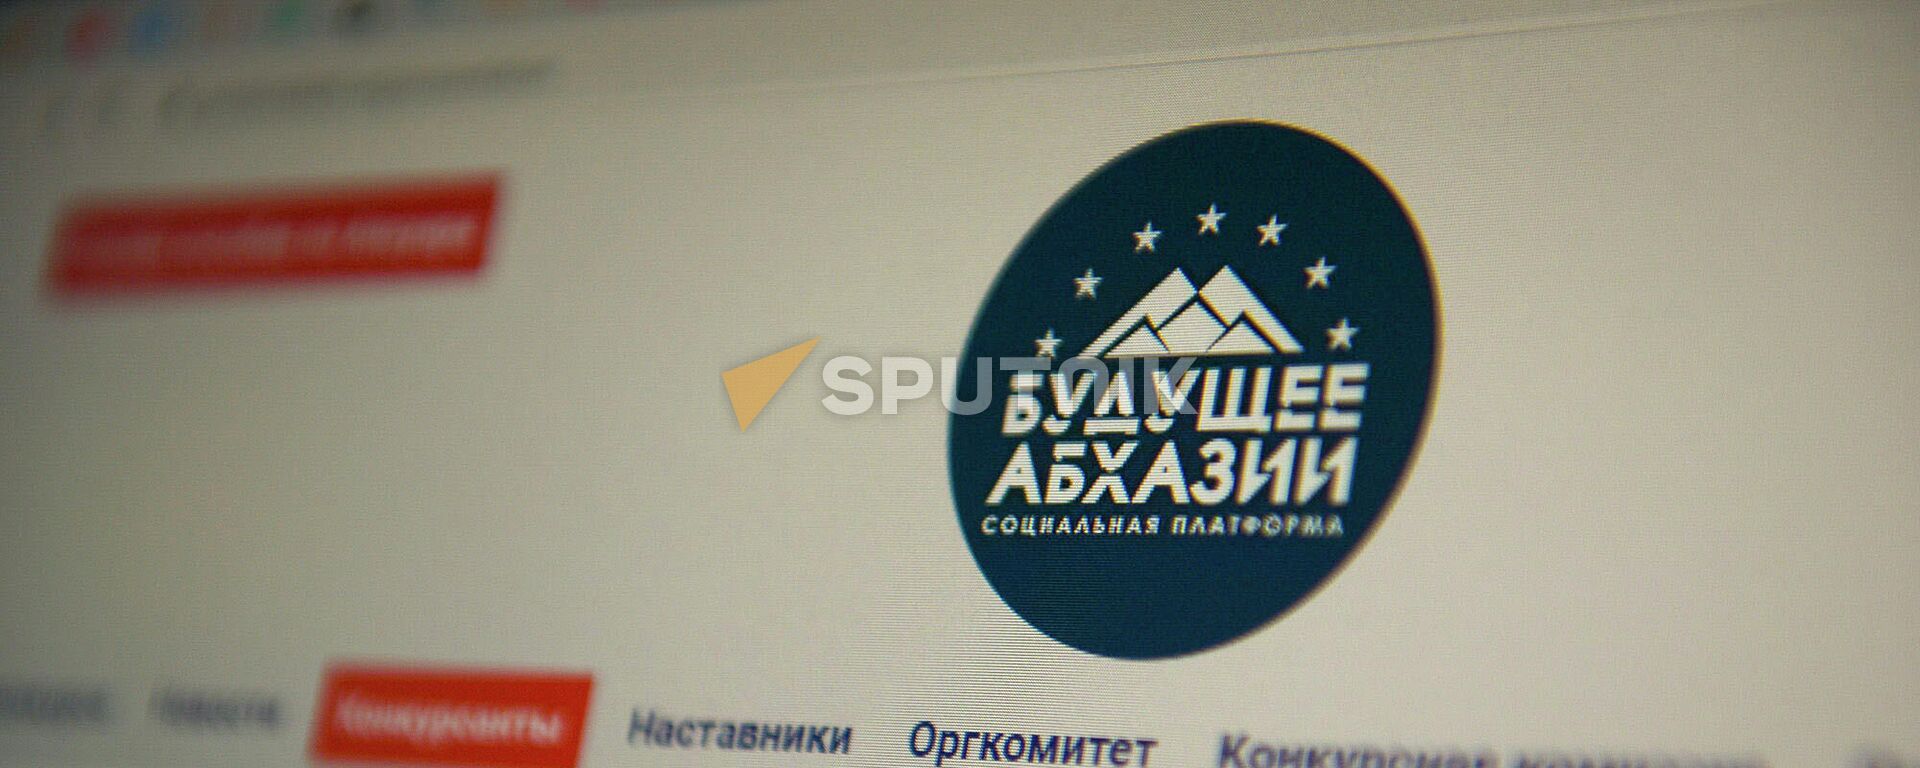 Программа реформ Будущее Абхазии была разработана финалистами конкурса Гордость Абхазии - Sputnik Аҧсны, 1920, 13.11.2020